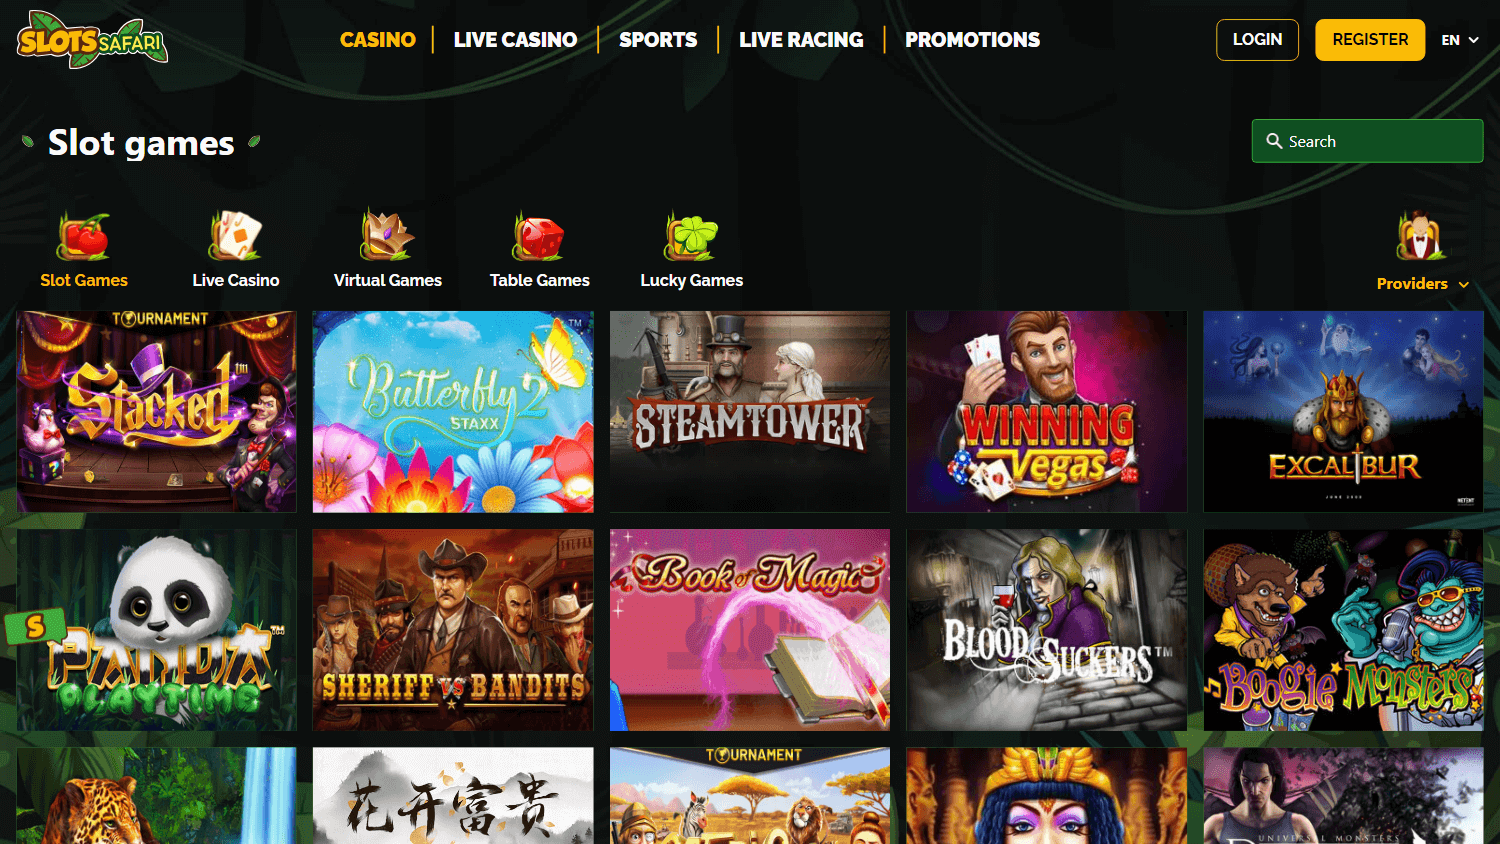 slots_safari_casino_game_gallery_desktop